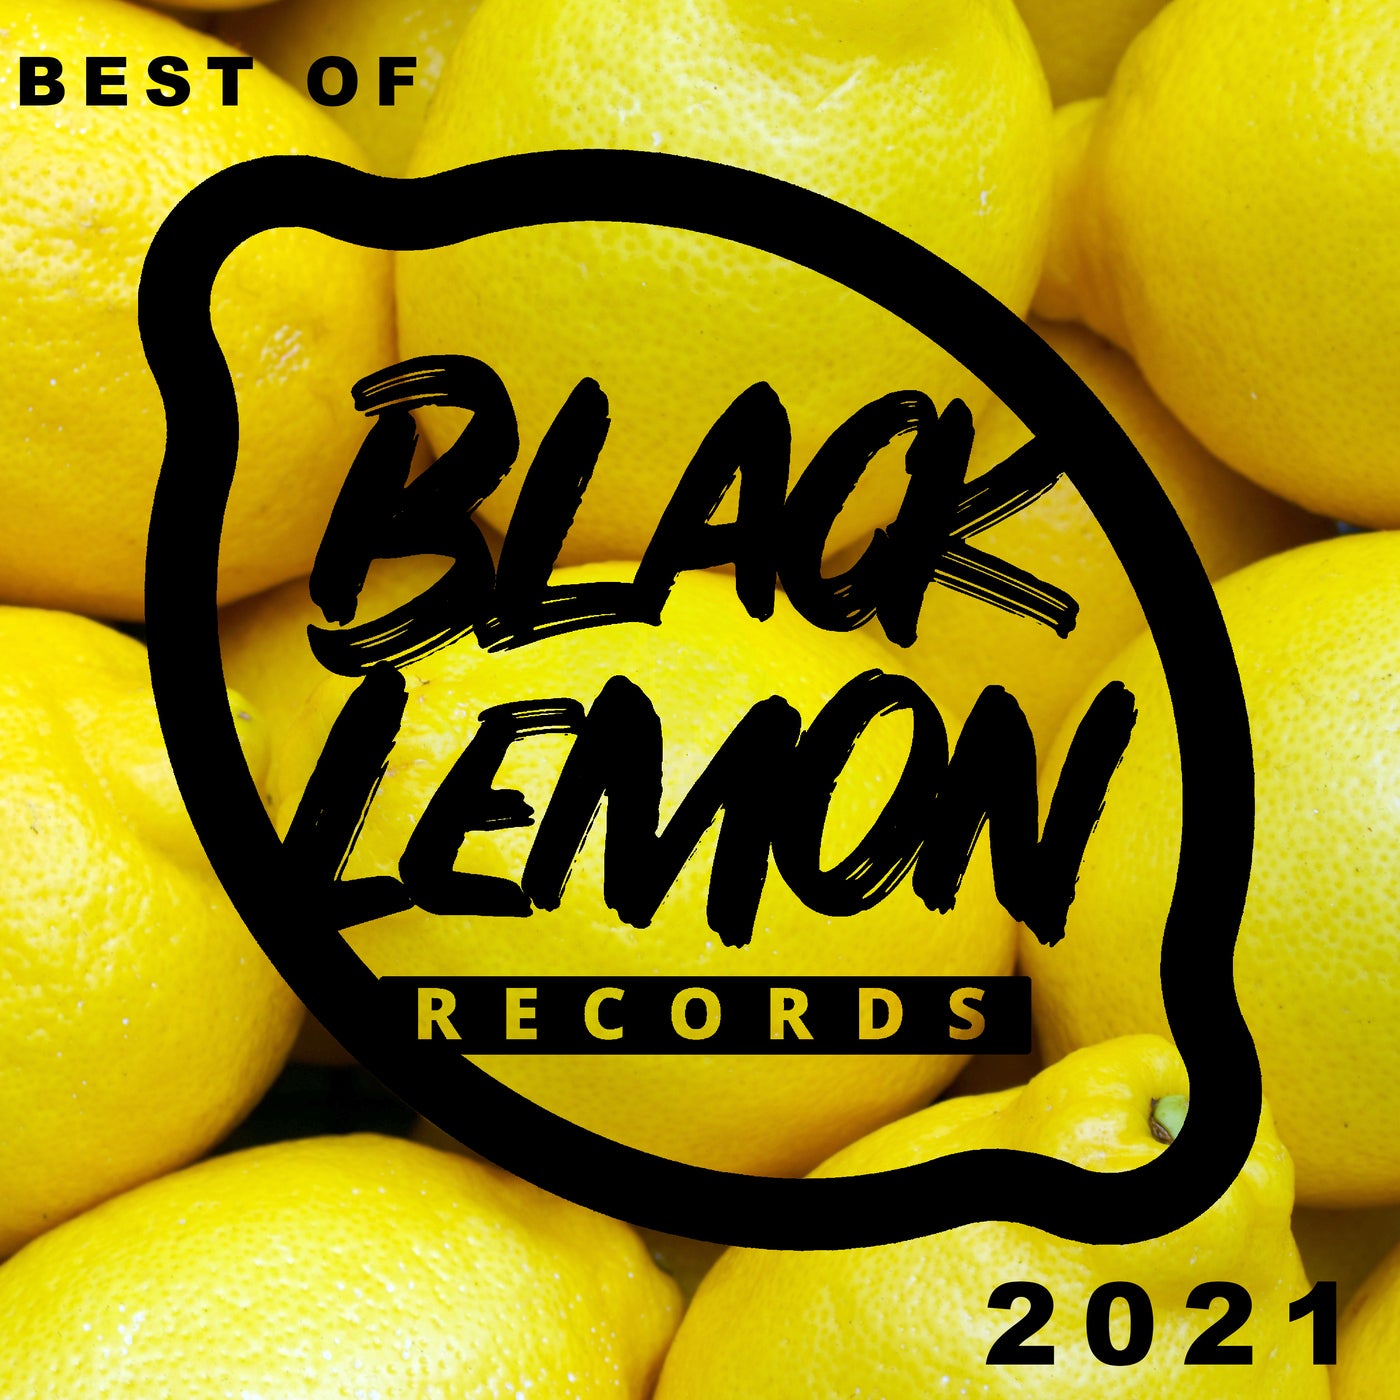 Best of Black Lemon Records 2021